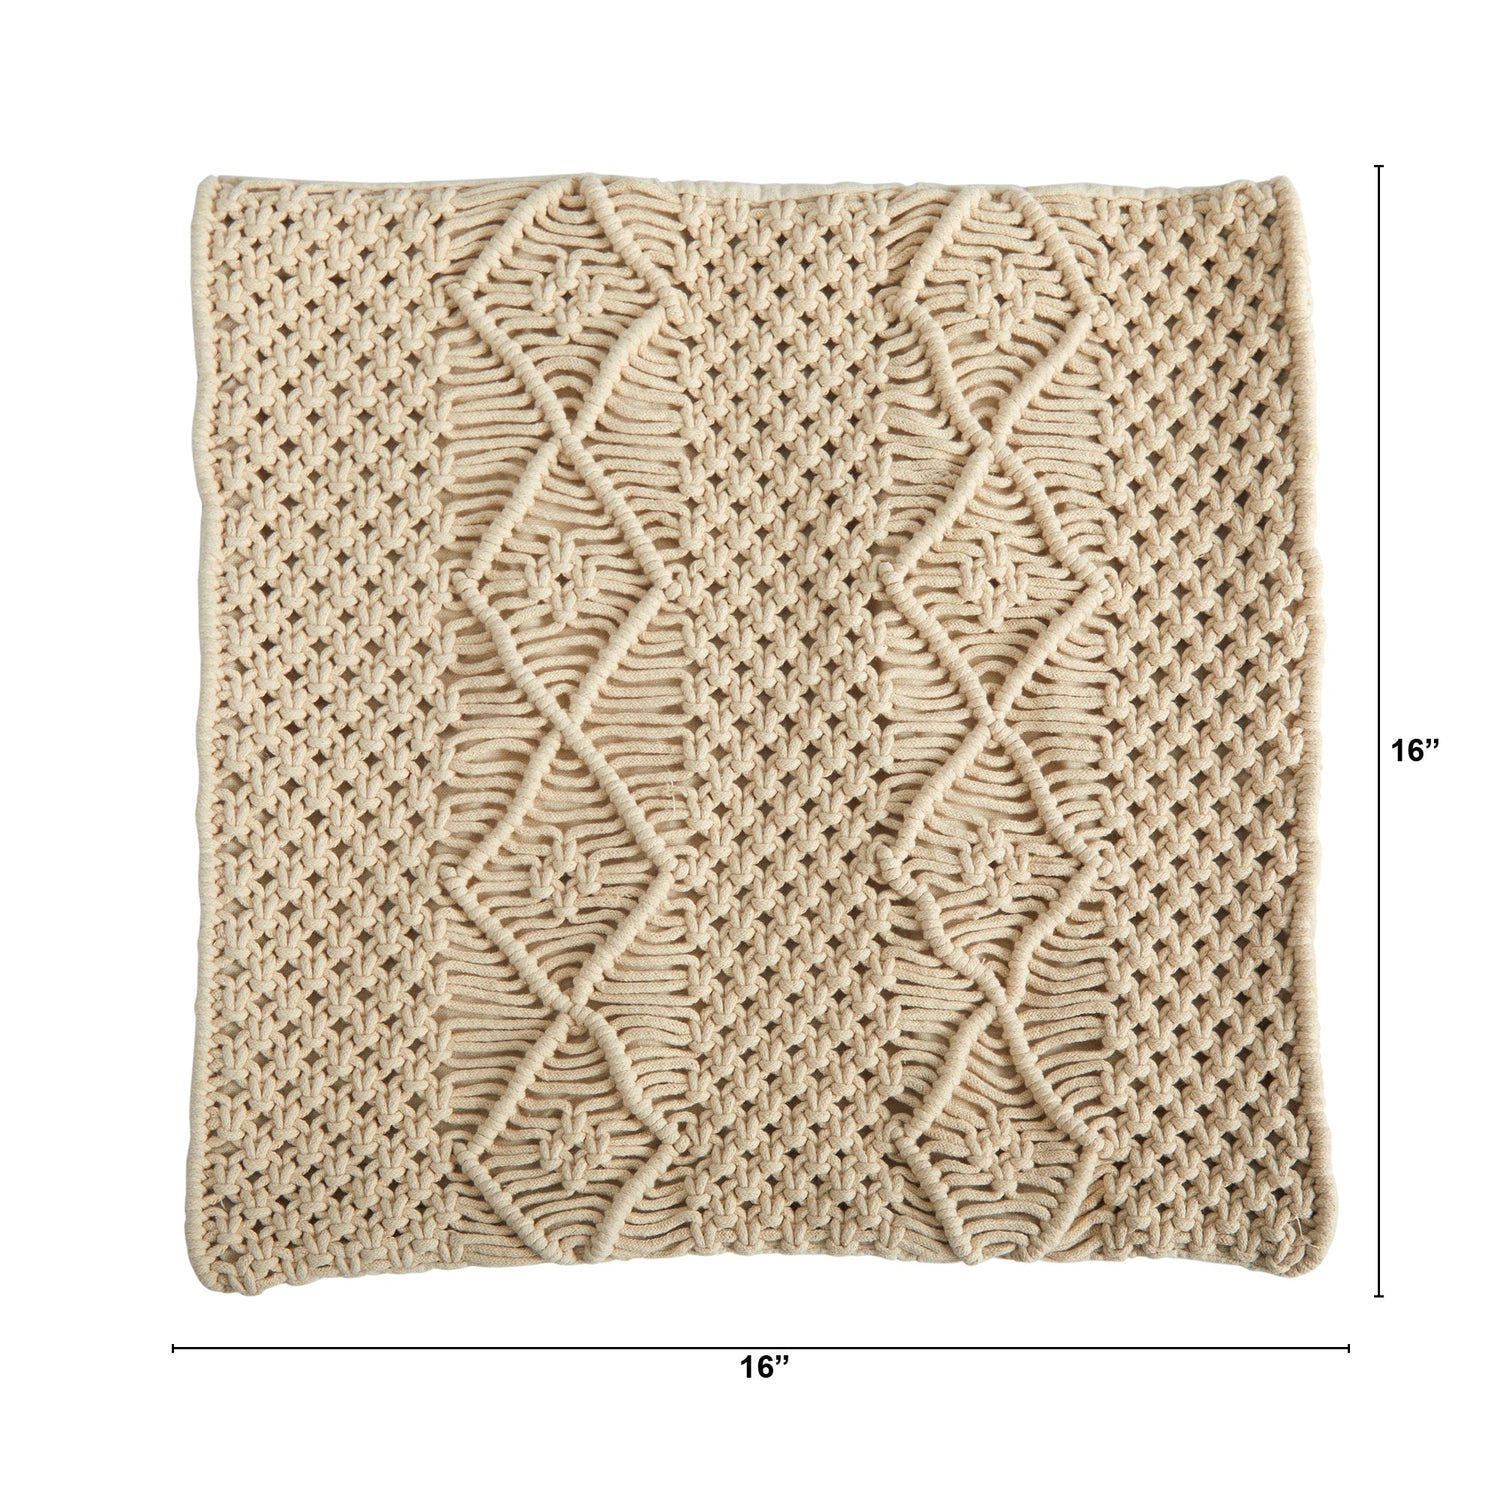 16” BOHO Woven Macrame Decorative Pillow Cover